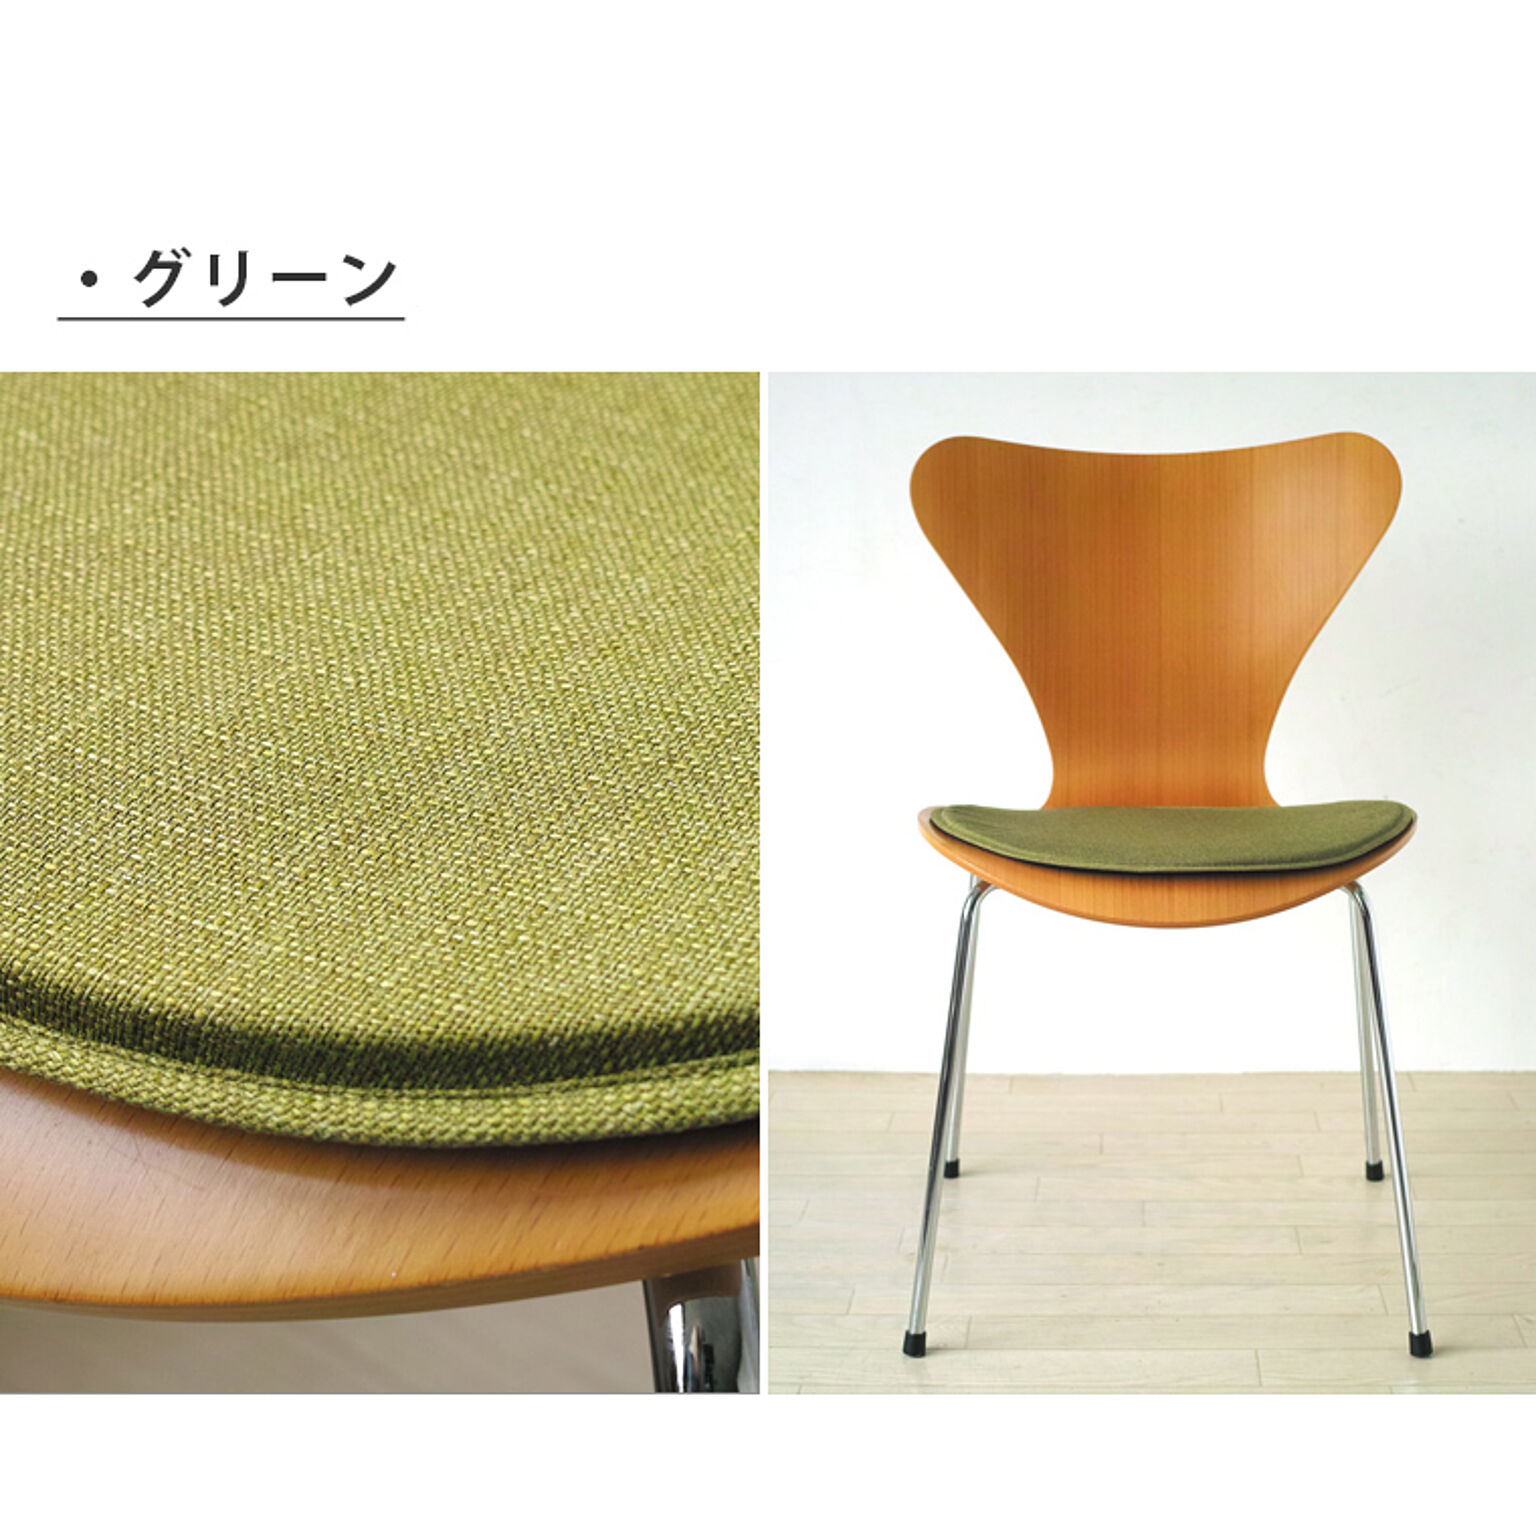 Will-Limited. 日本製セブンチェア専用チェアパッド PUDDLE 薄型 洗える グリーン 滑り止め 撥水